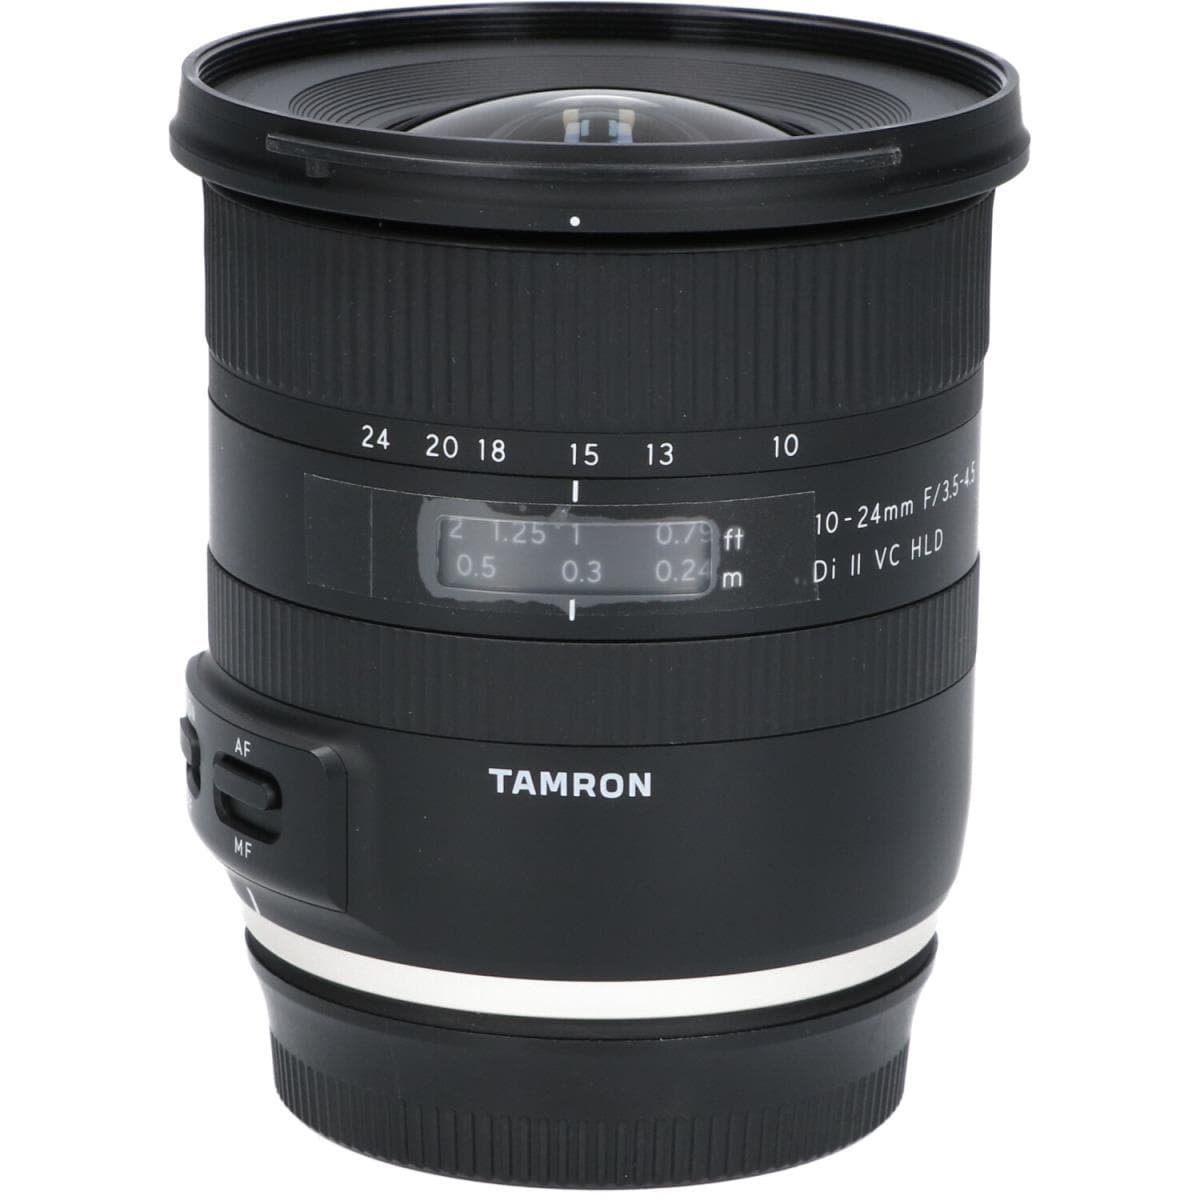 TAMRON EOS10-24mm F3.5-4.5DIIIVCHLD